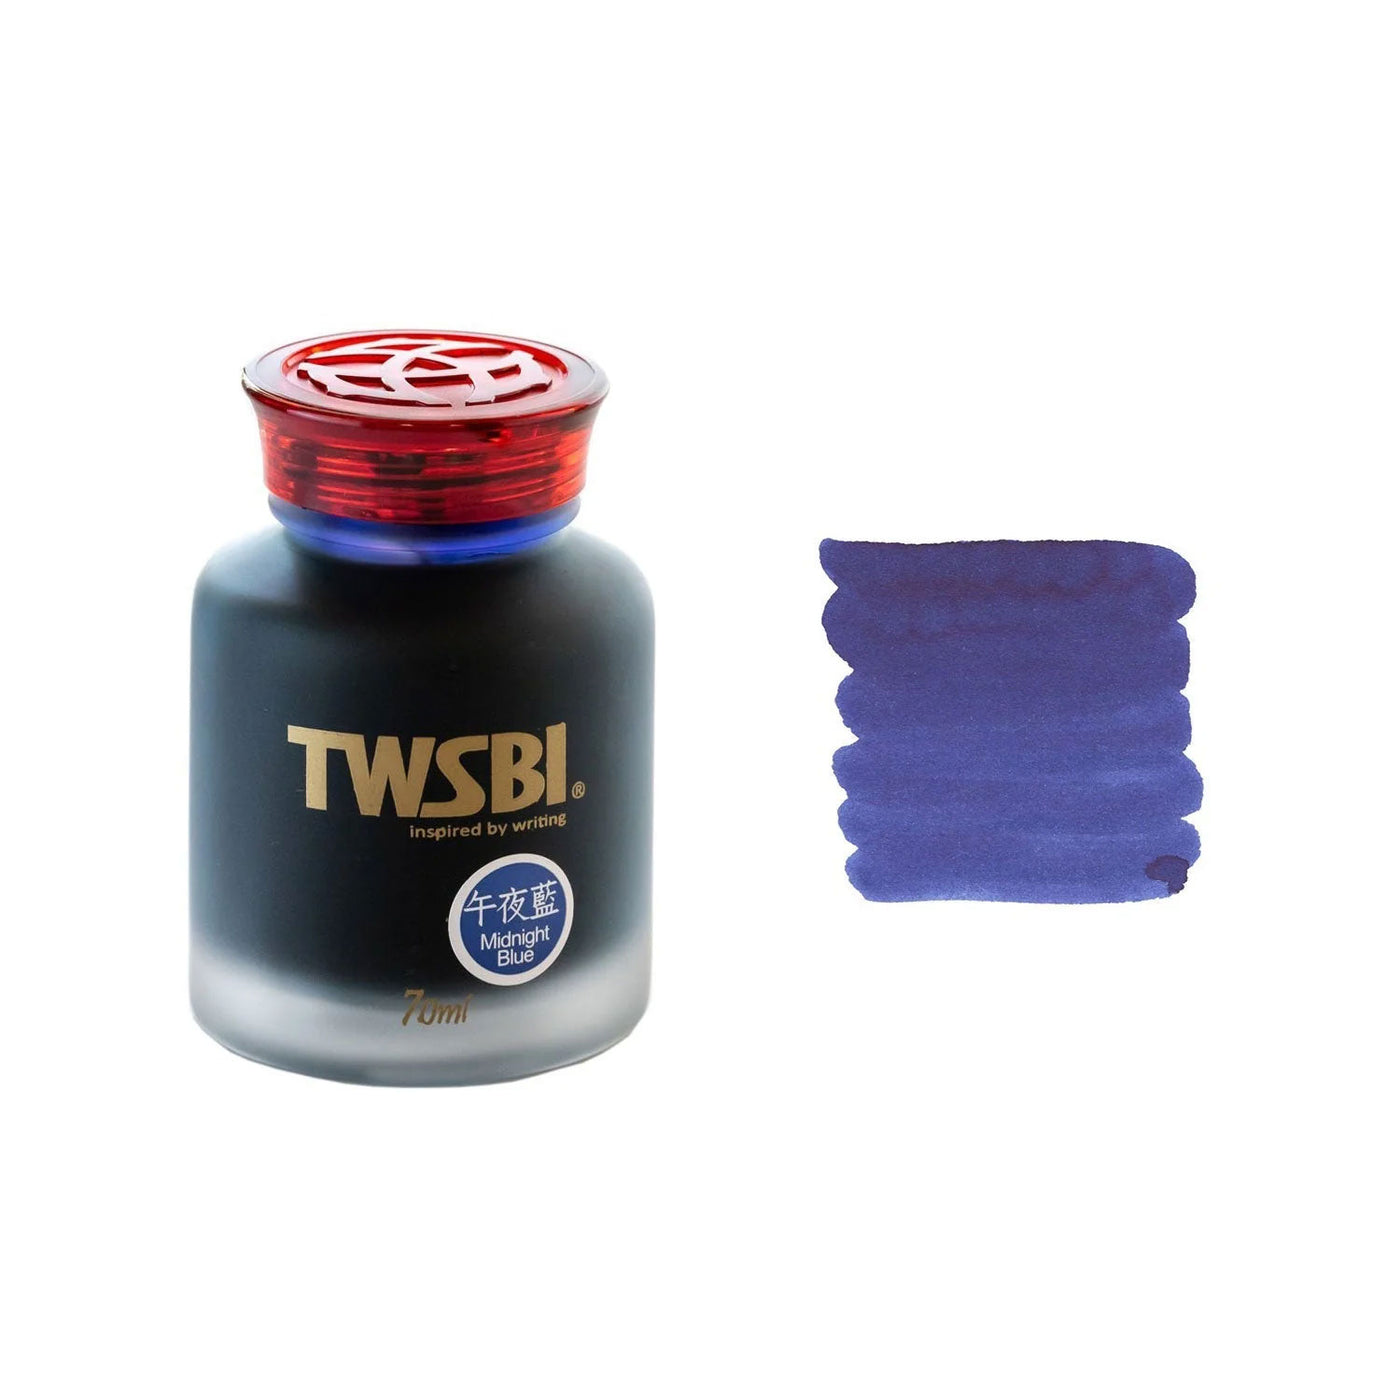 TWSBI Ink Bottle Midnight Blue - 70ml